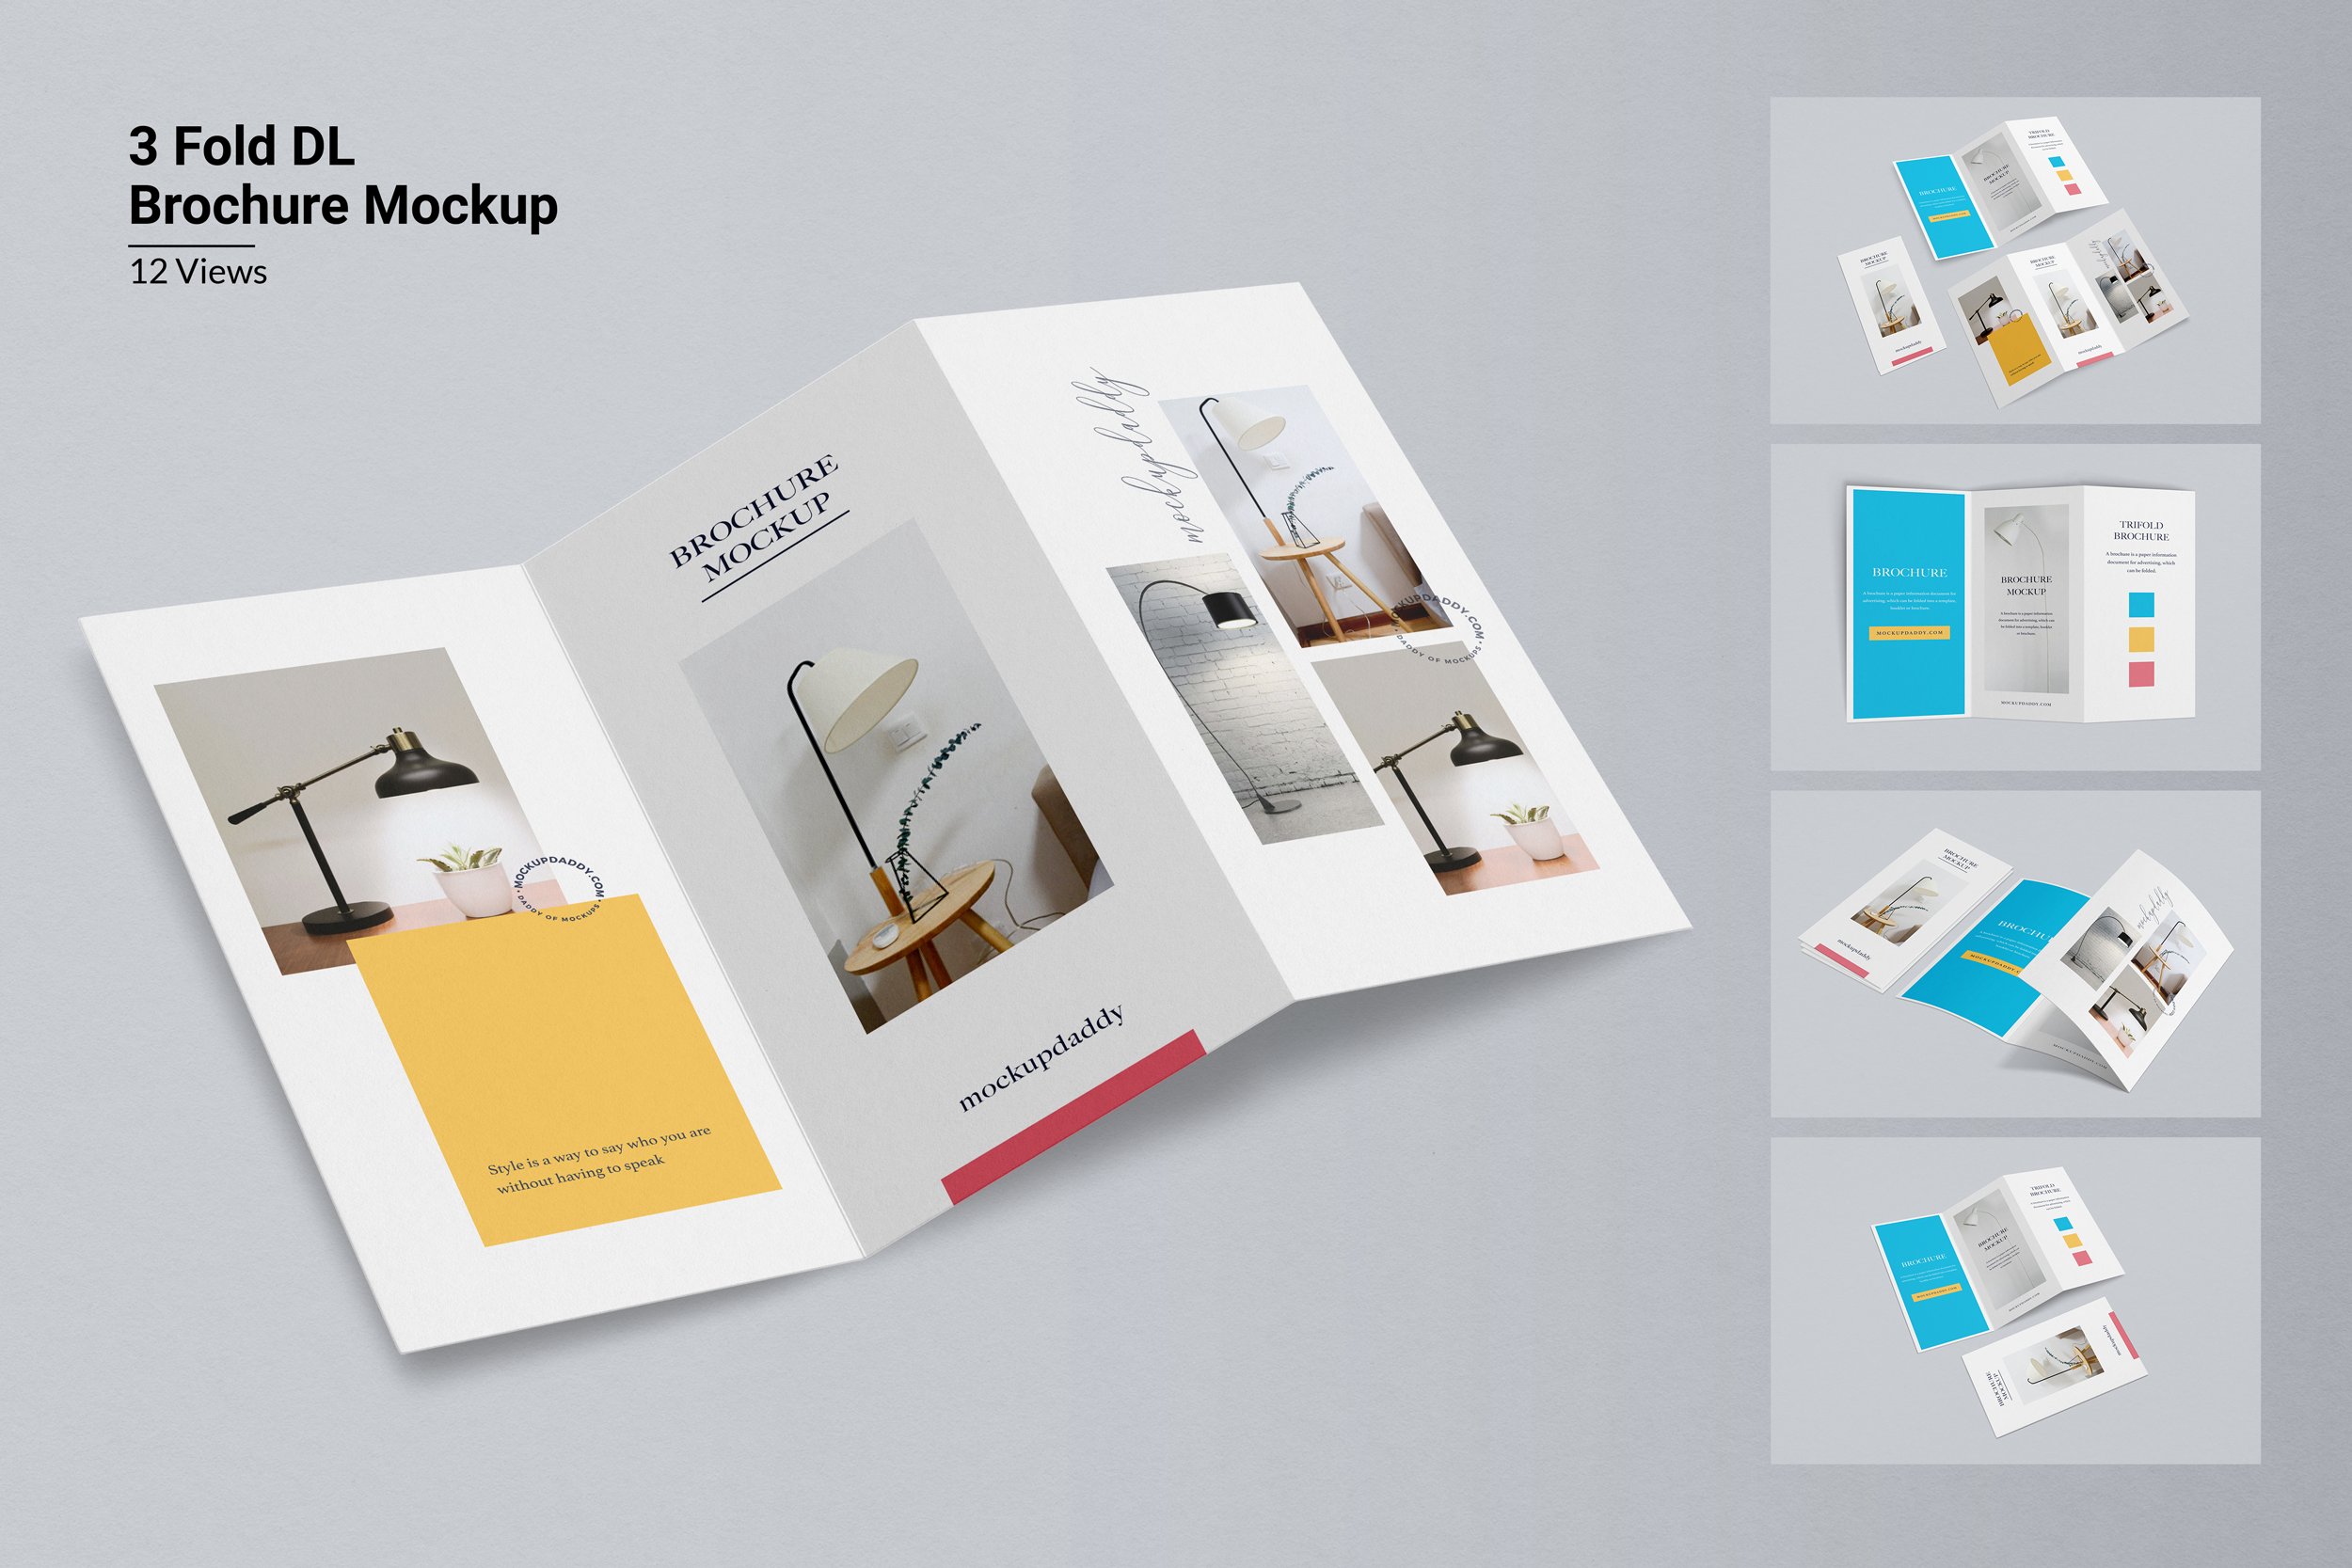 3 Folds DL Brochure Mockup cover image.